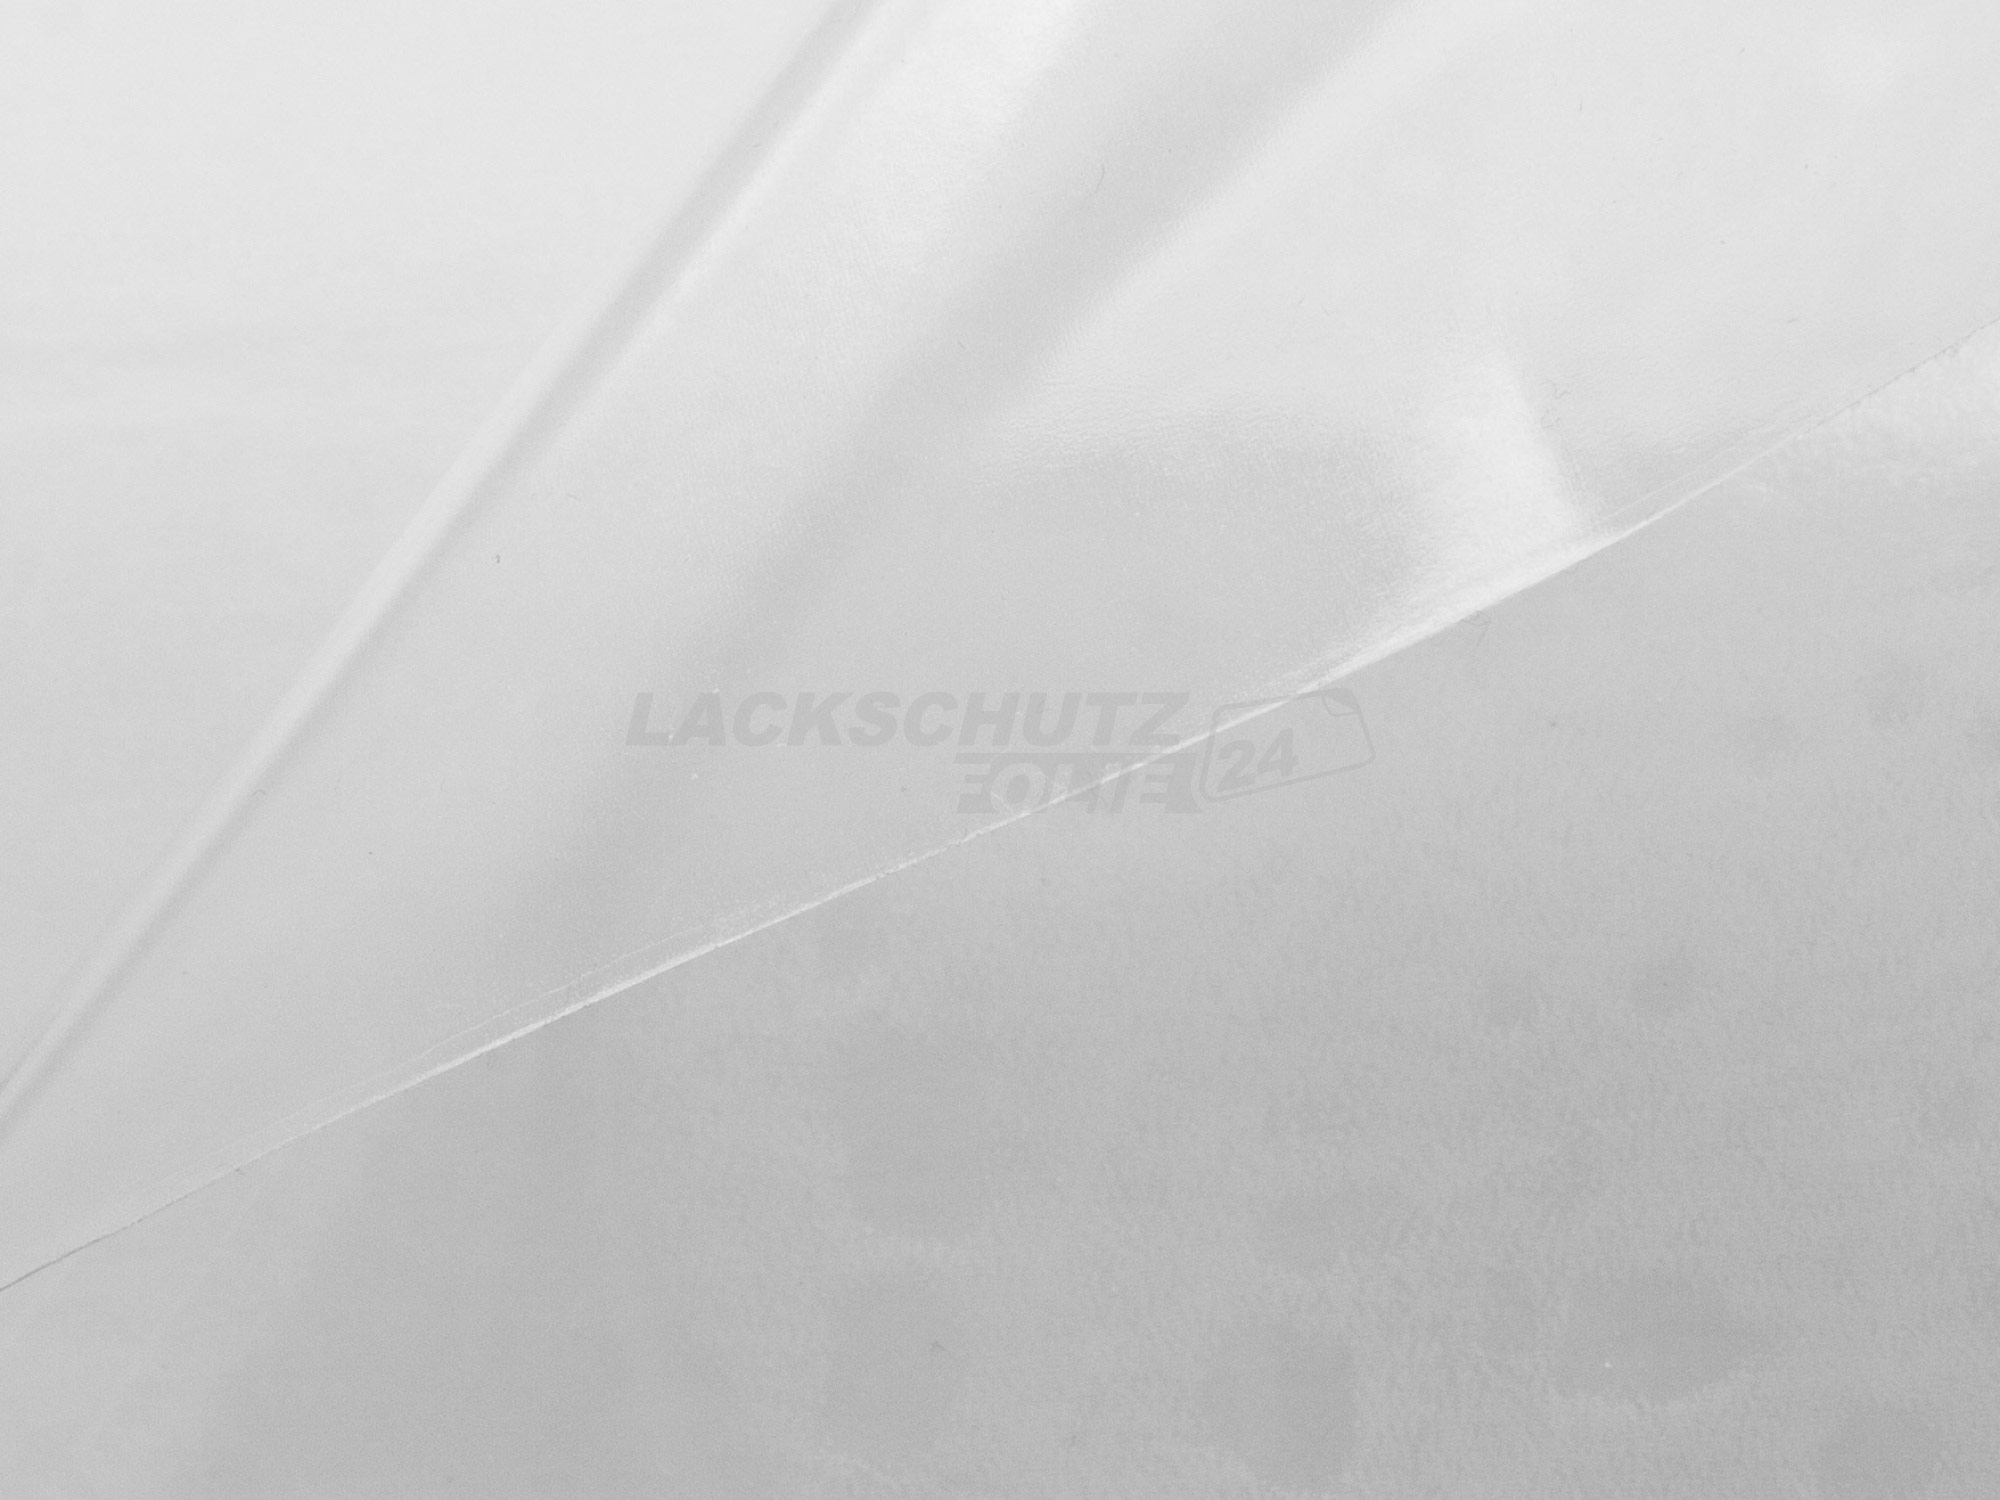 Ladekantenschutzfolie - Transparent Glatt Hochglänzend für Audi A4 Avant (Kombi) B7, Typ 8E, BJ 2004-2008